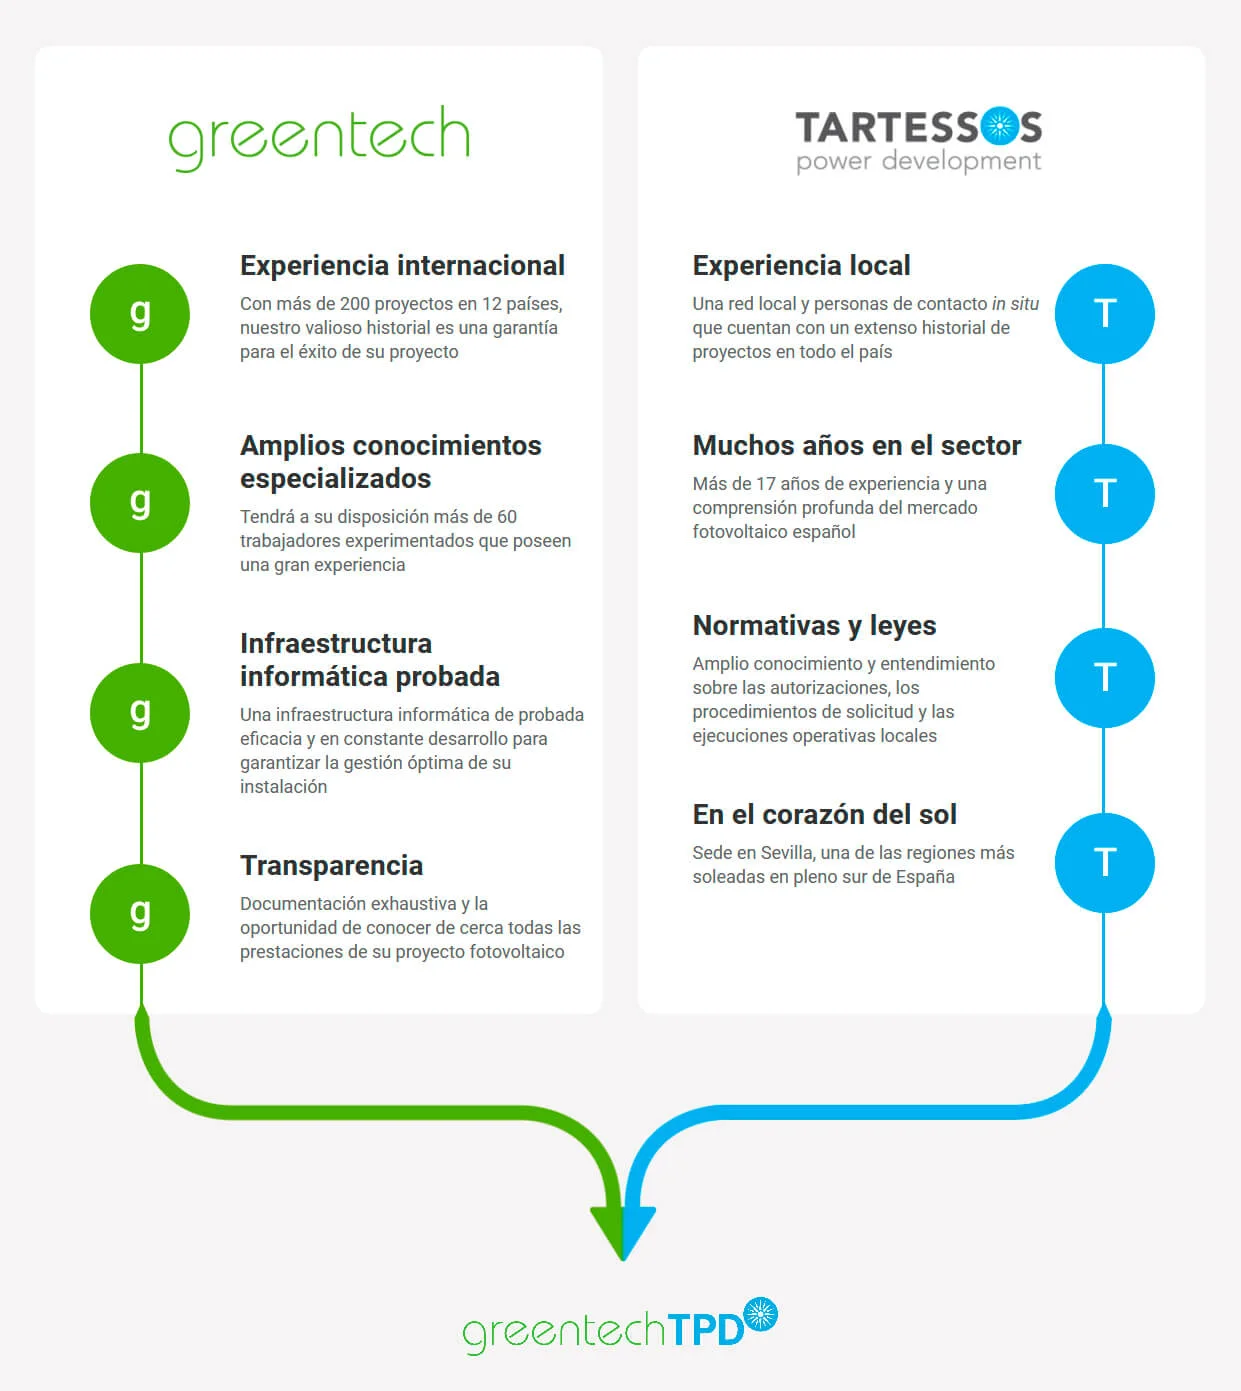 Cooperación de Greentech con Tartessos